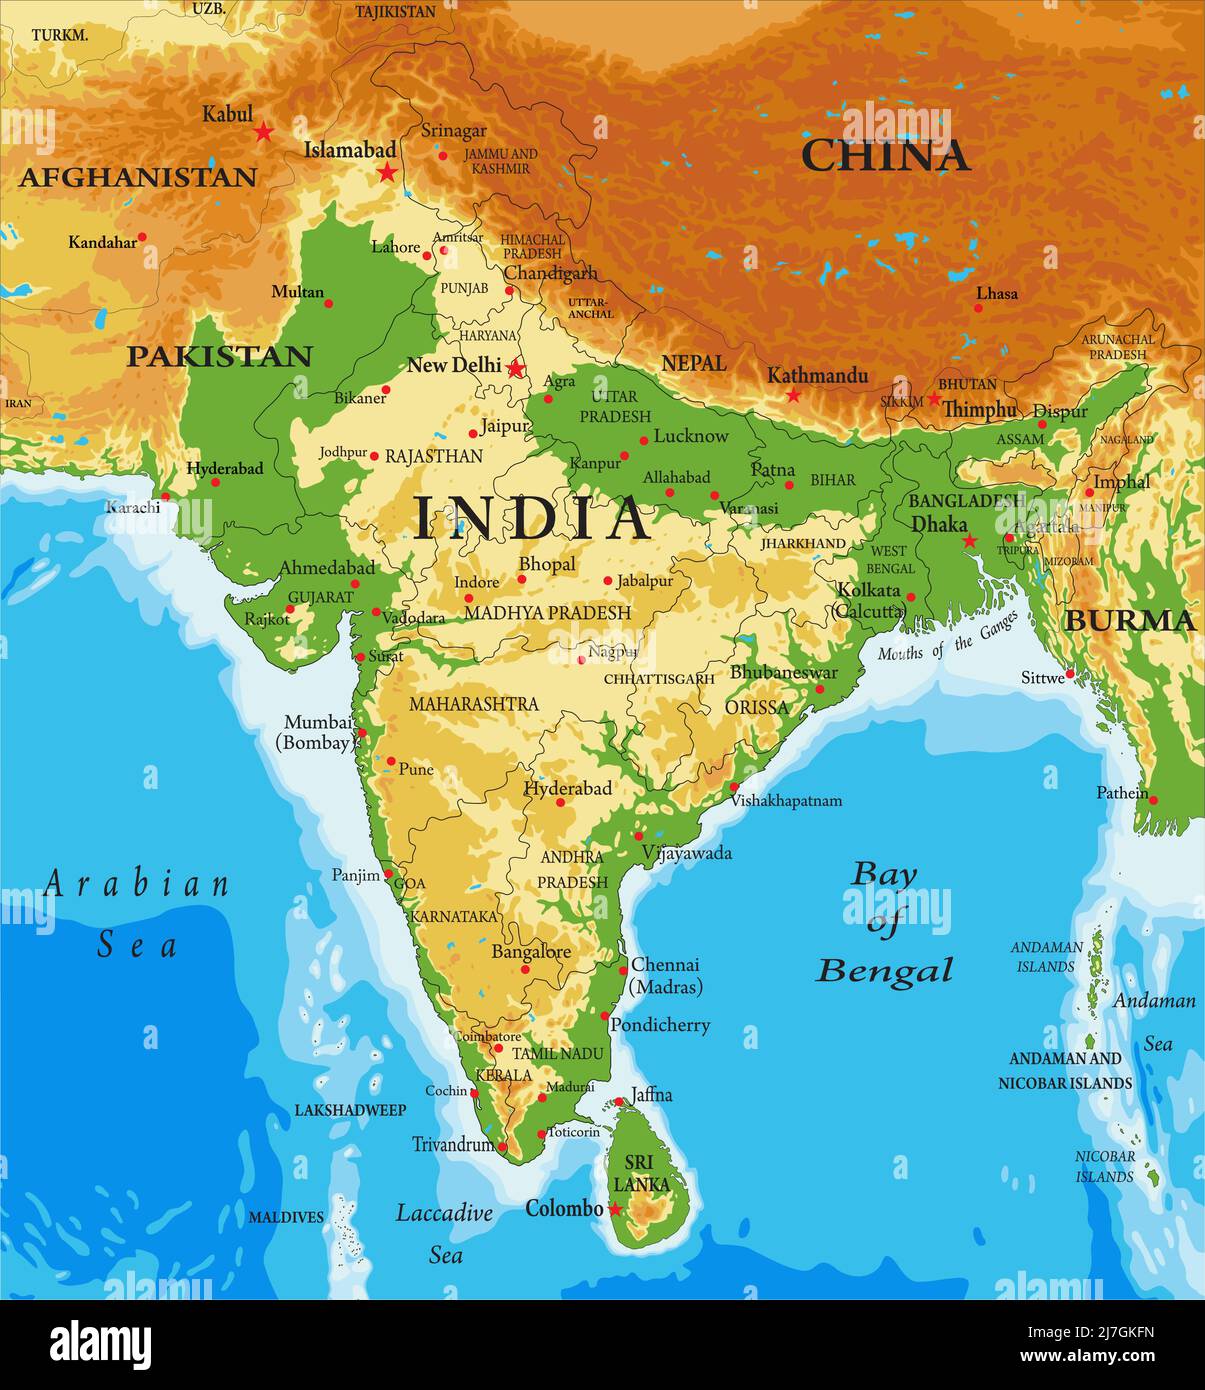 Евразия дели. Физическая карта Индии. Карта Индии полуостров Индостан. Индостан физическая карта. Рельеф Индостана карта.